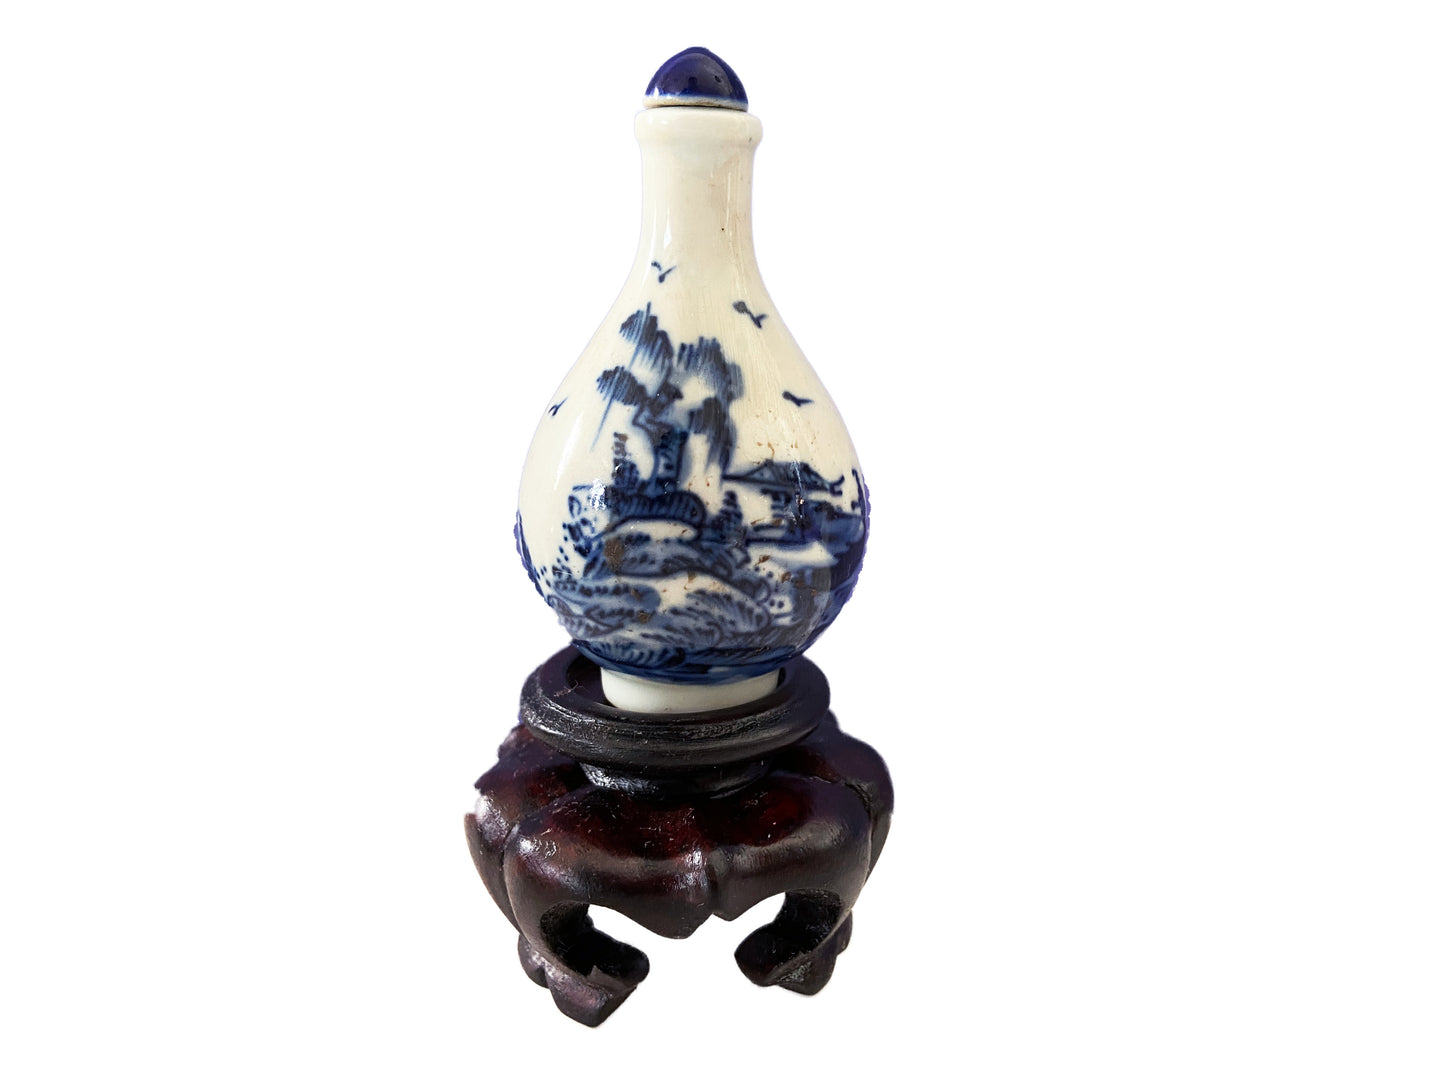 Vtg Chinoiserie Blue & White Porcelain Snuff Bottle on Stand 4.25" H